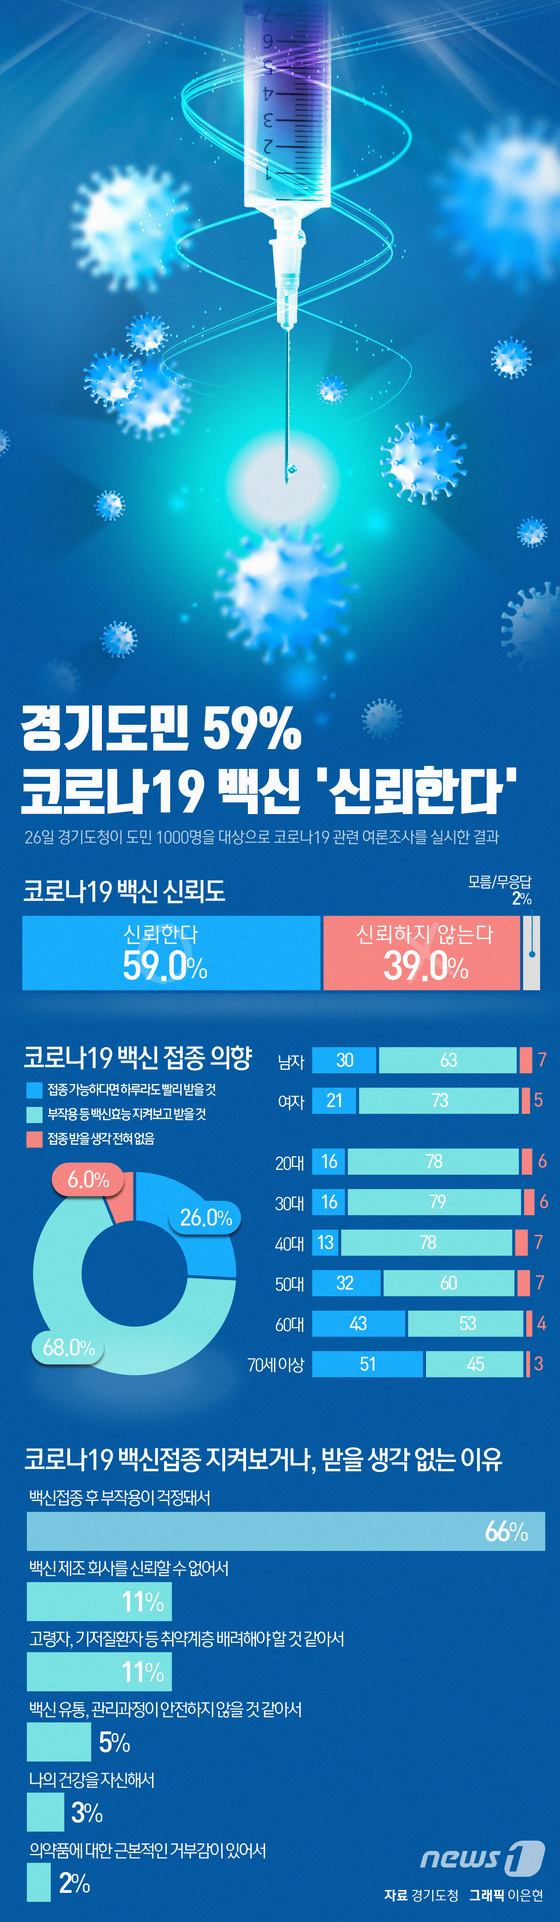 [그래픽뉴스] 경기도민 59% 코로나19 백신 \'신뢰한다\'